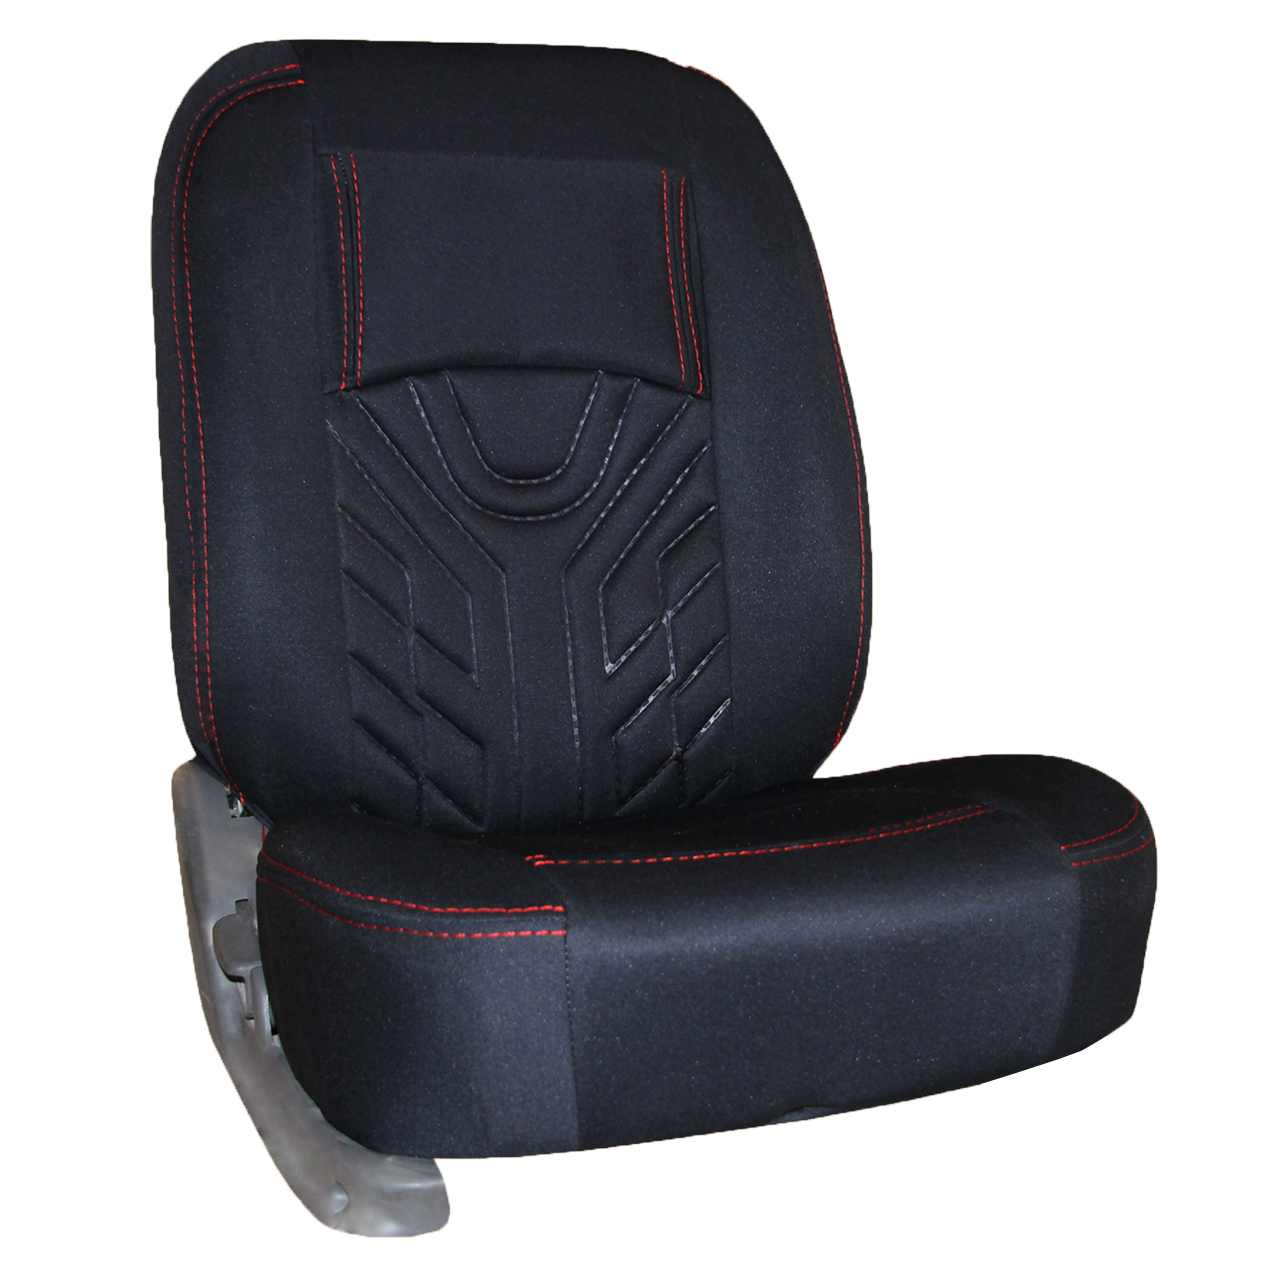 روکش صندلی خودرو مدل SAR001 مناسب برای پراید صبا